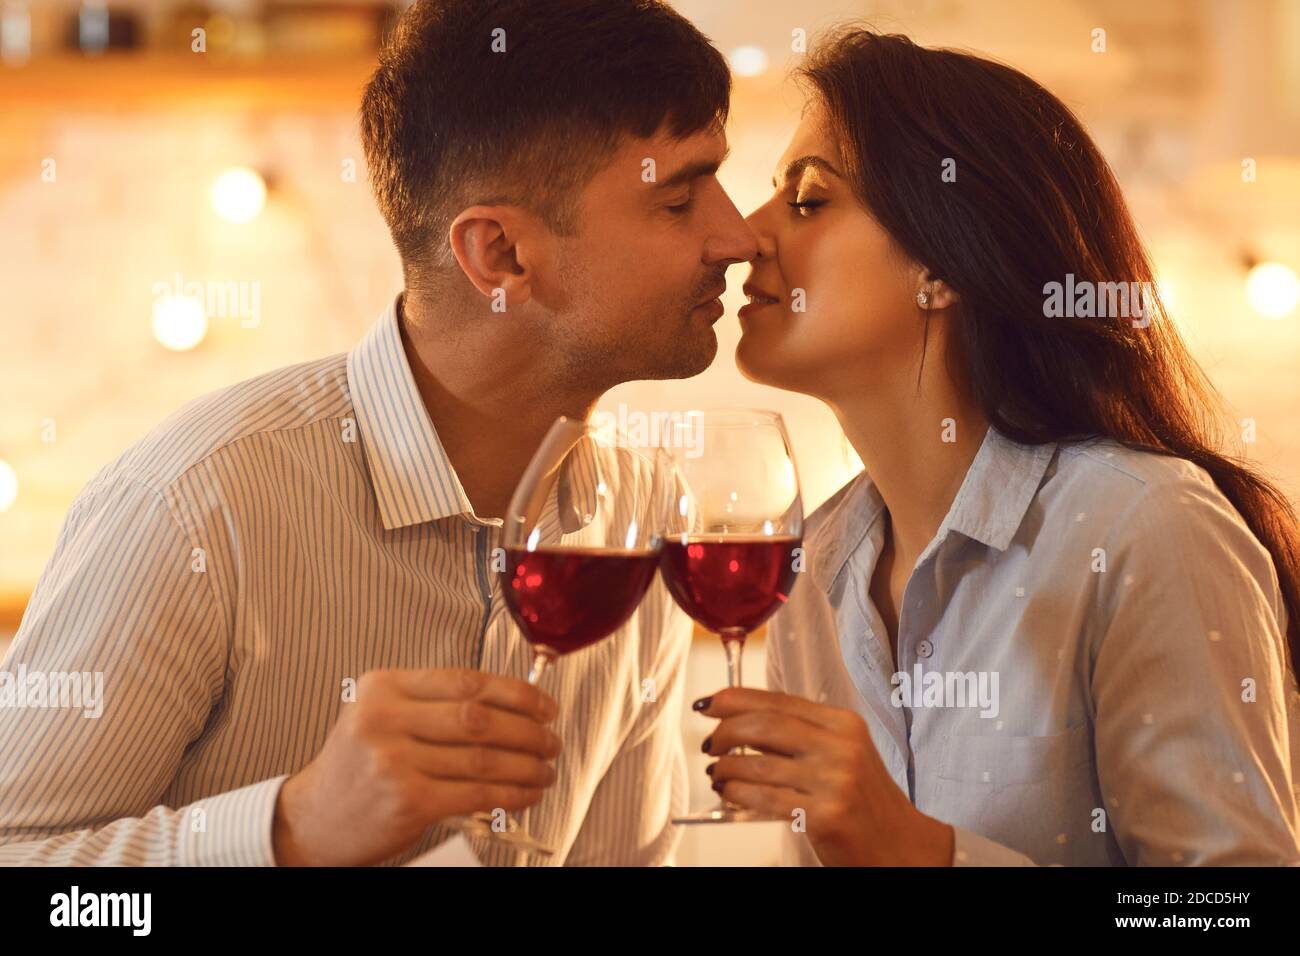 Jeune couple aimant s'embrassant et tenant des verres de Vin pendant la fête de la Saint-Valentin Banque D'Images